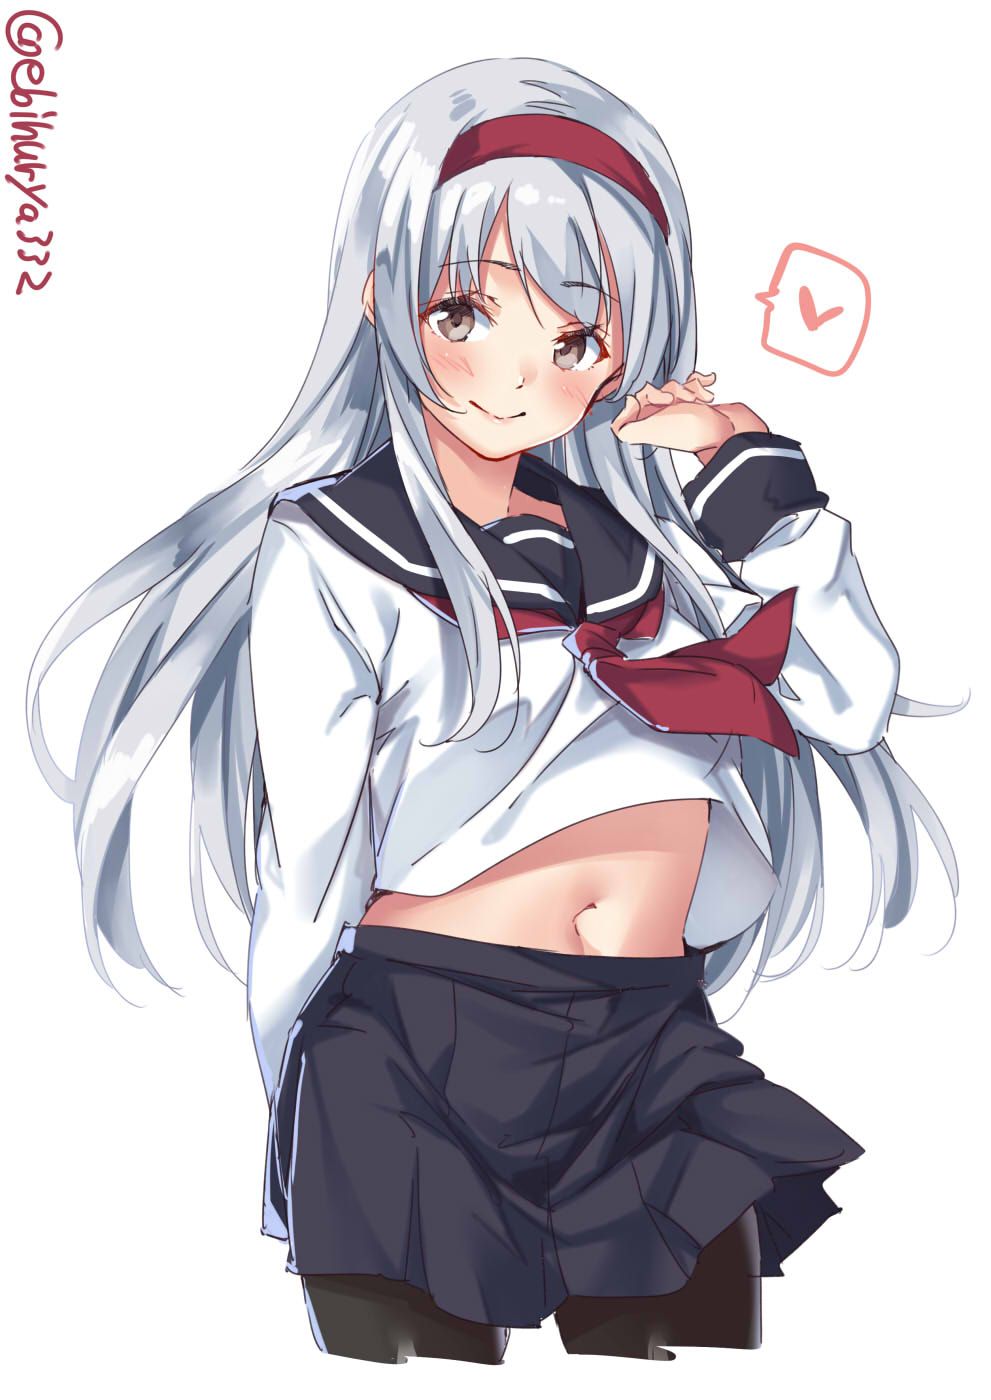 【2D】Speaking of school uniforms, sailor uniforms! Erotic images of cute schoolgirls 3